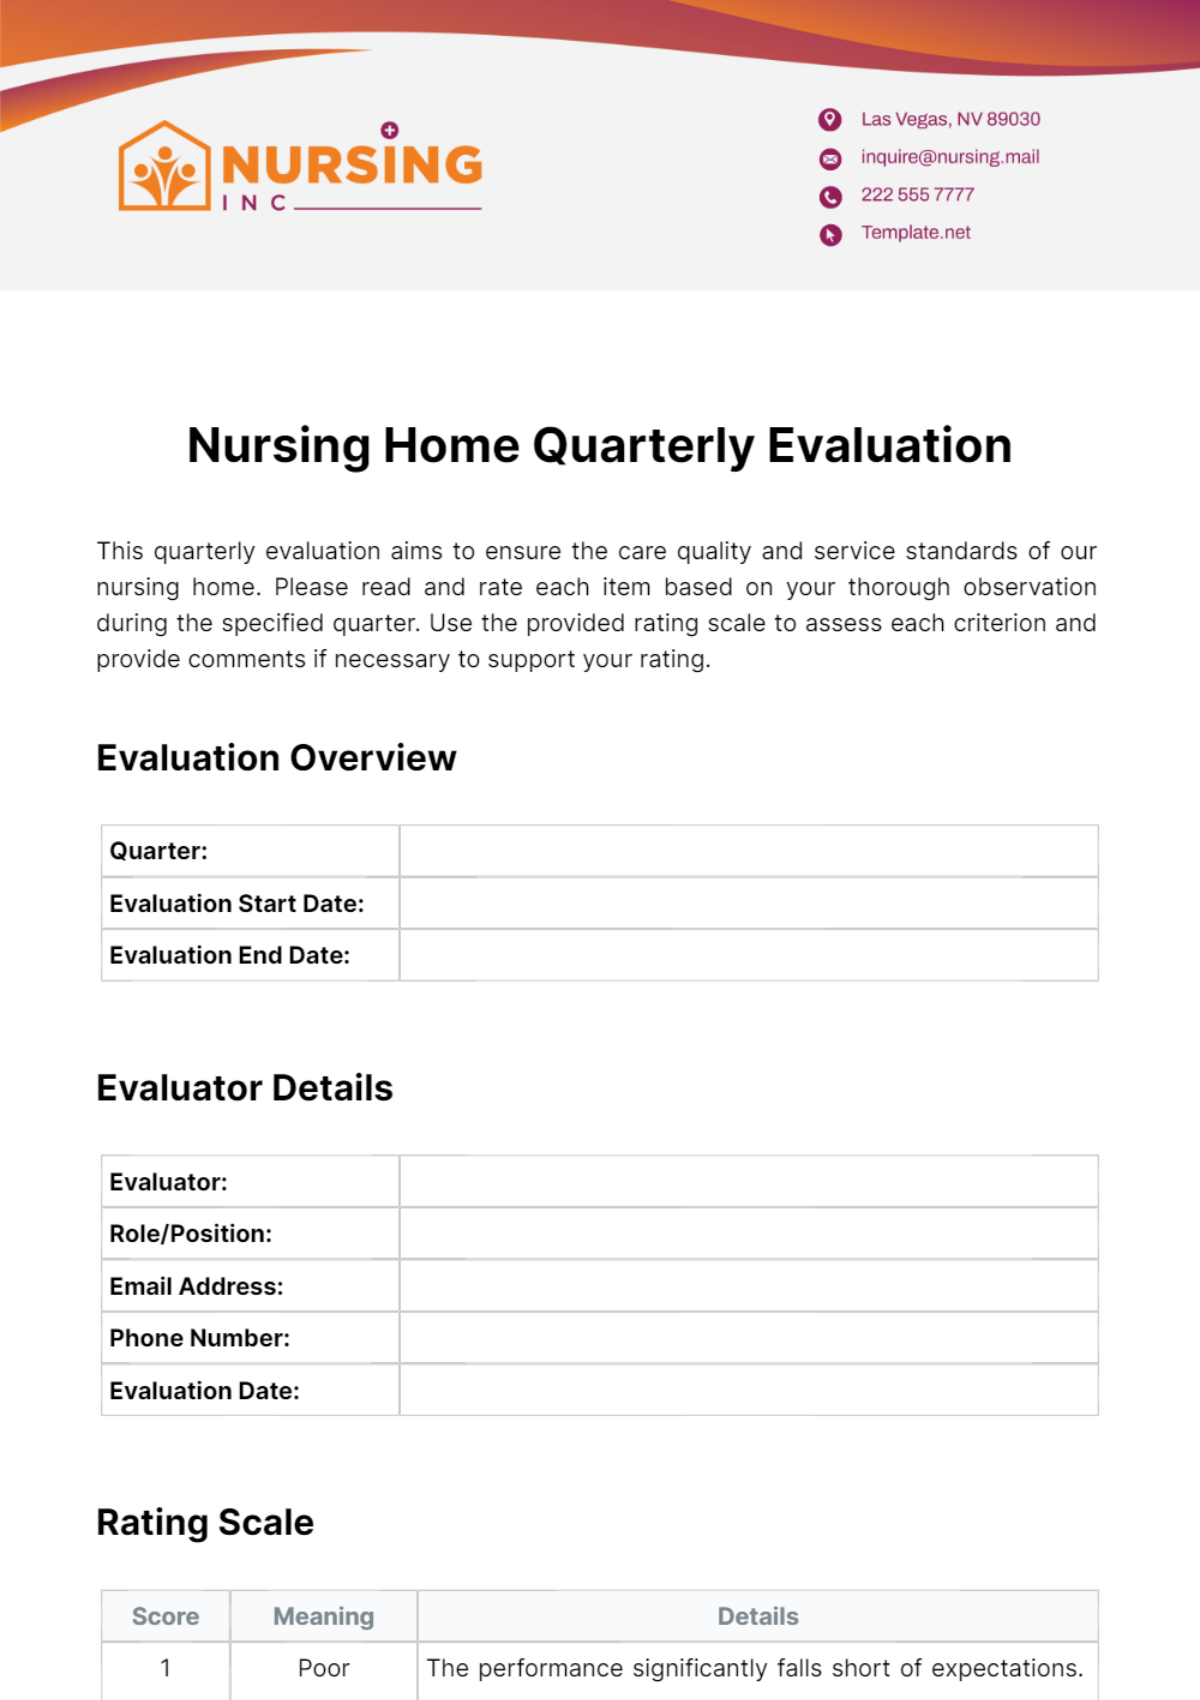 Nursing Home Quarterly Evaluation Template